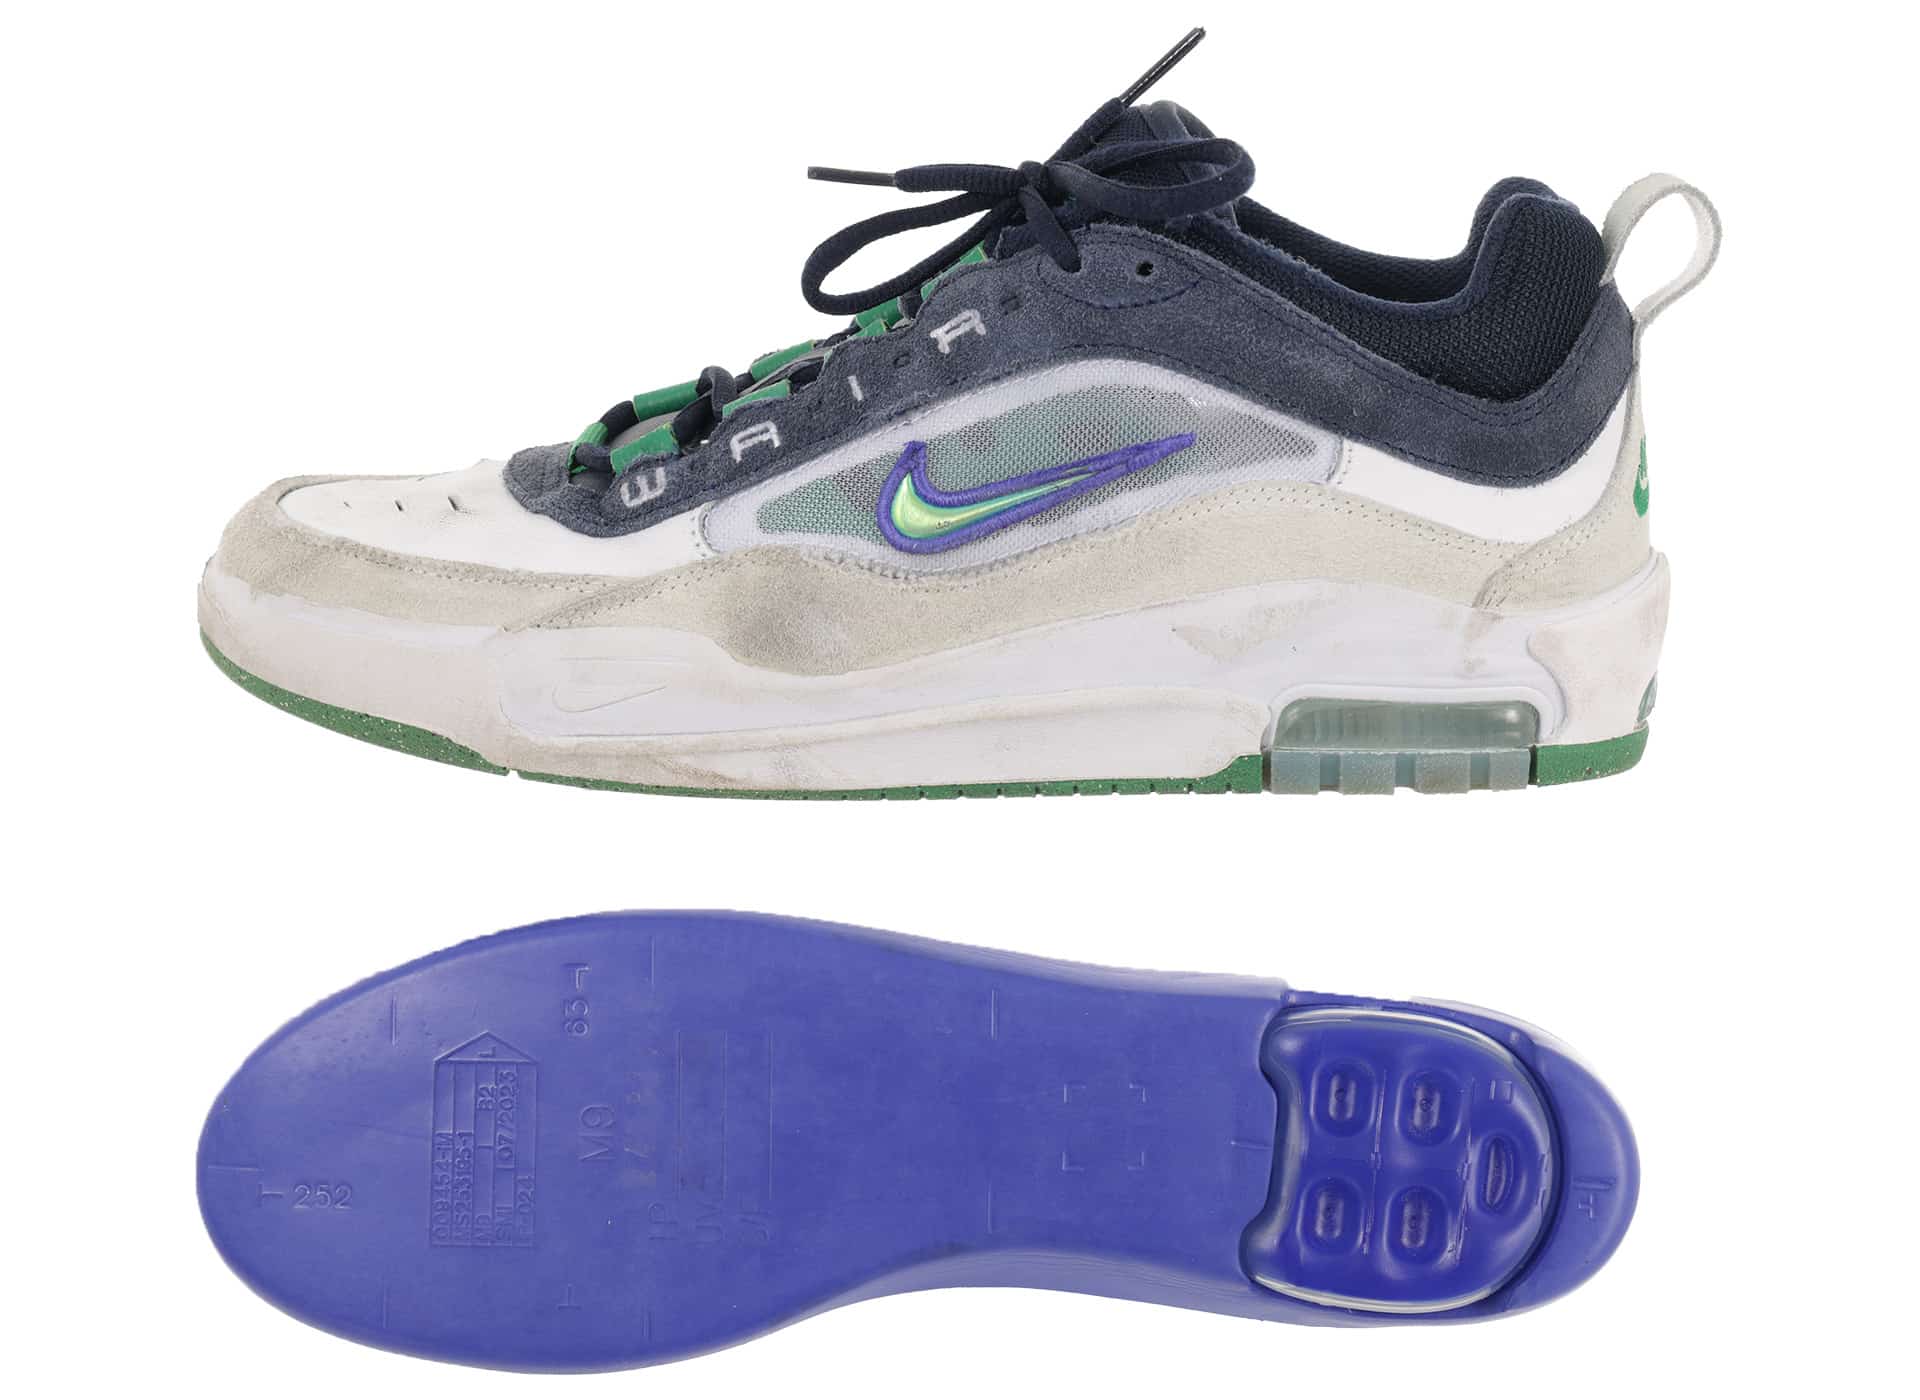 Nike SB Air Max Ishod | Skate Shoe Review | Tactics